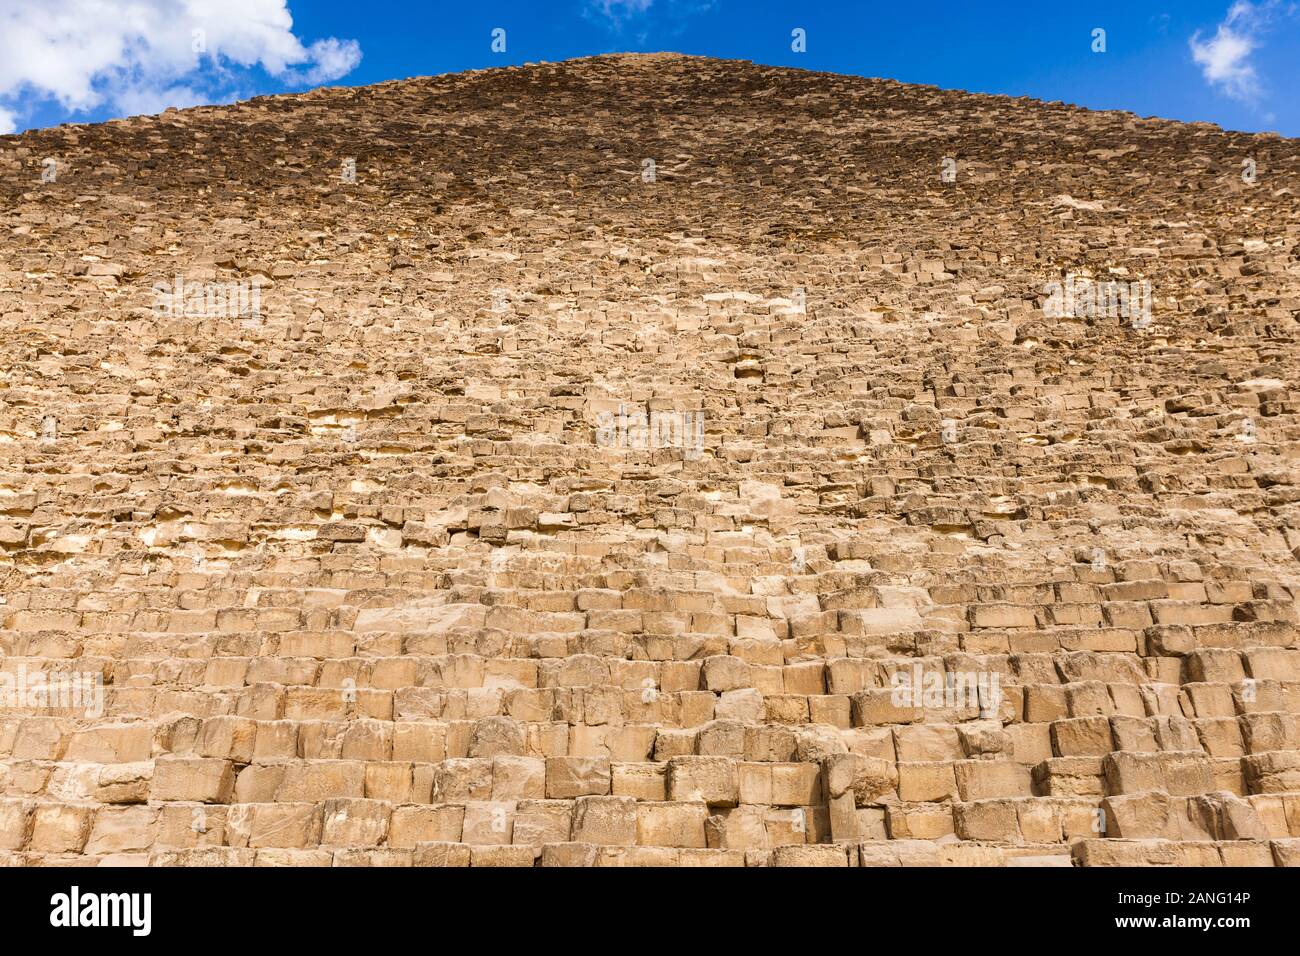 Grande Pyramide de Giza, aussi Pyramide de Khuf, grandes pyramides, dans le désert sablonneux, giza, le caire, Egypte, Afrique du Nord, Afrique Banque D'Images